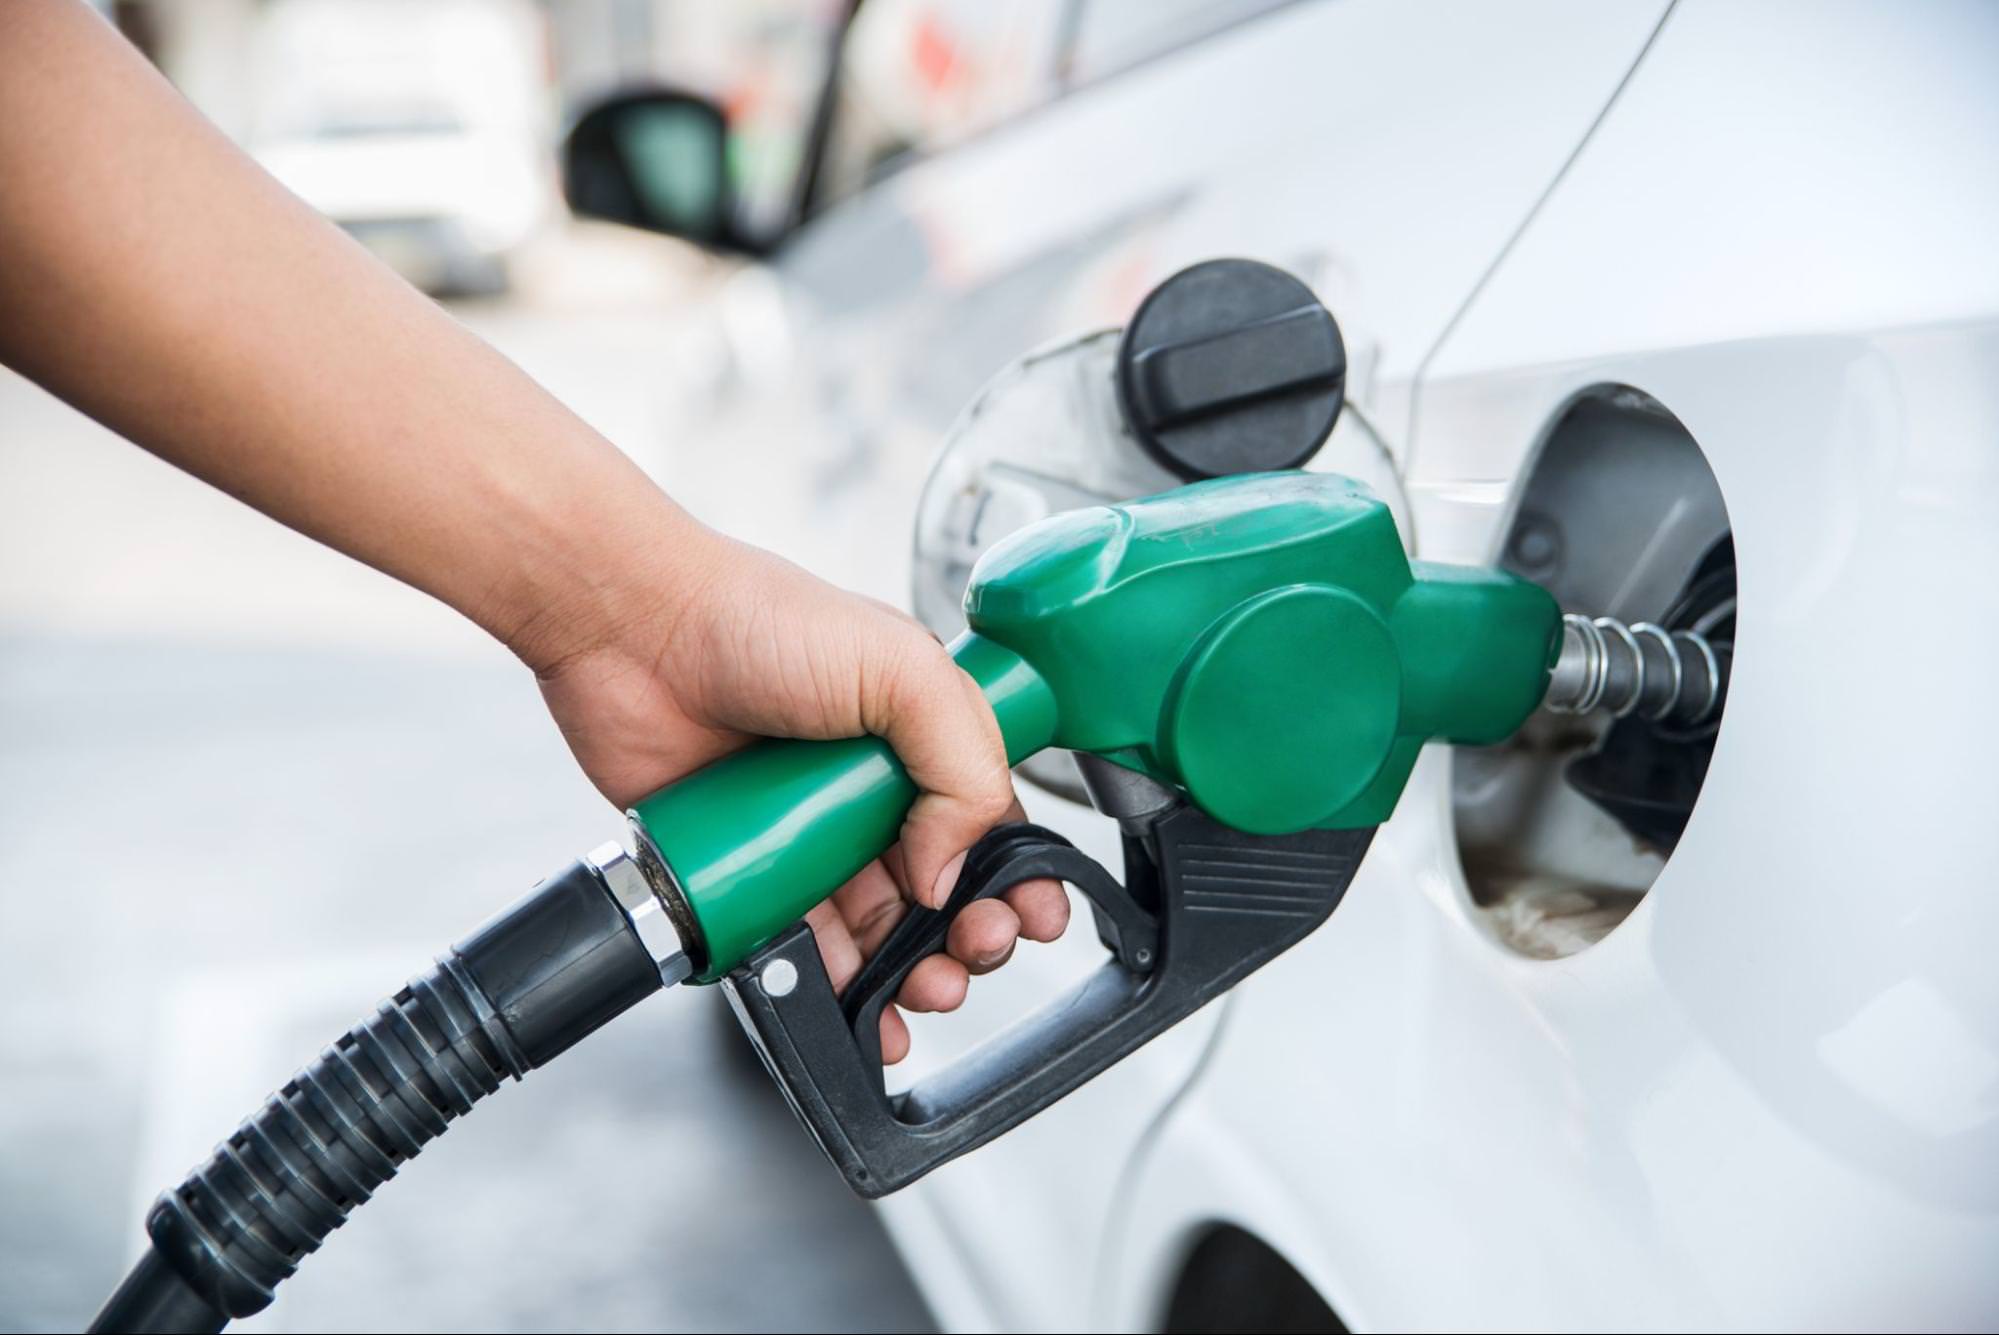 zblízka ruky držící zelenou palivovou trysku k doplnění paliva do auta